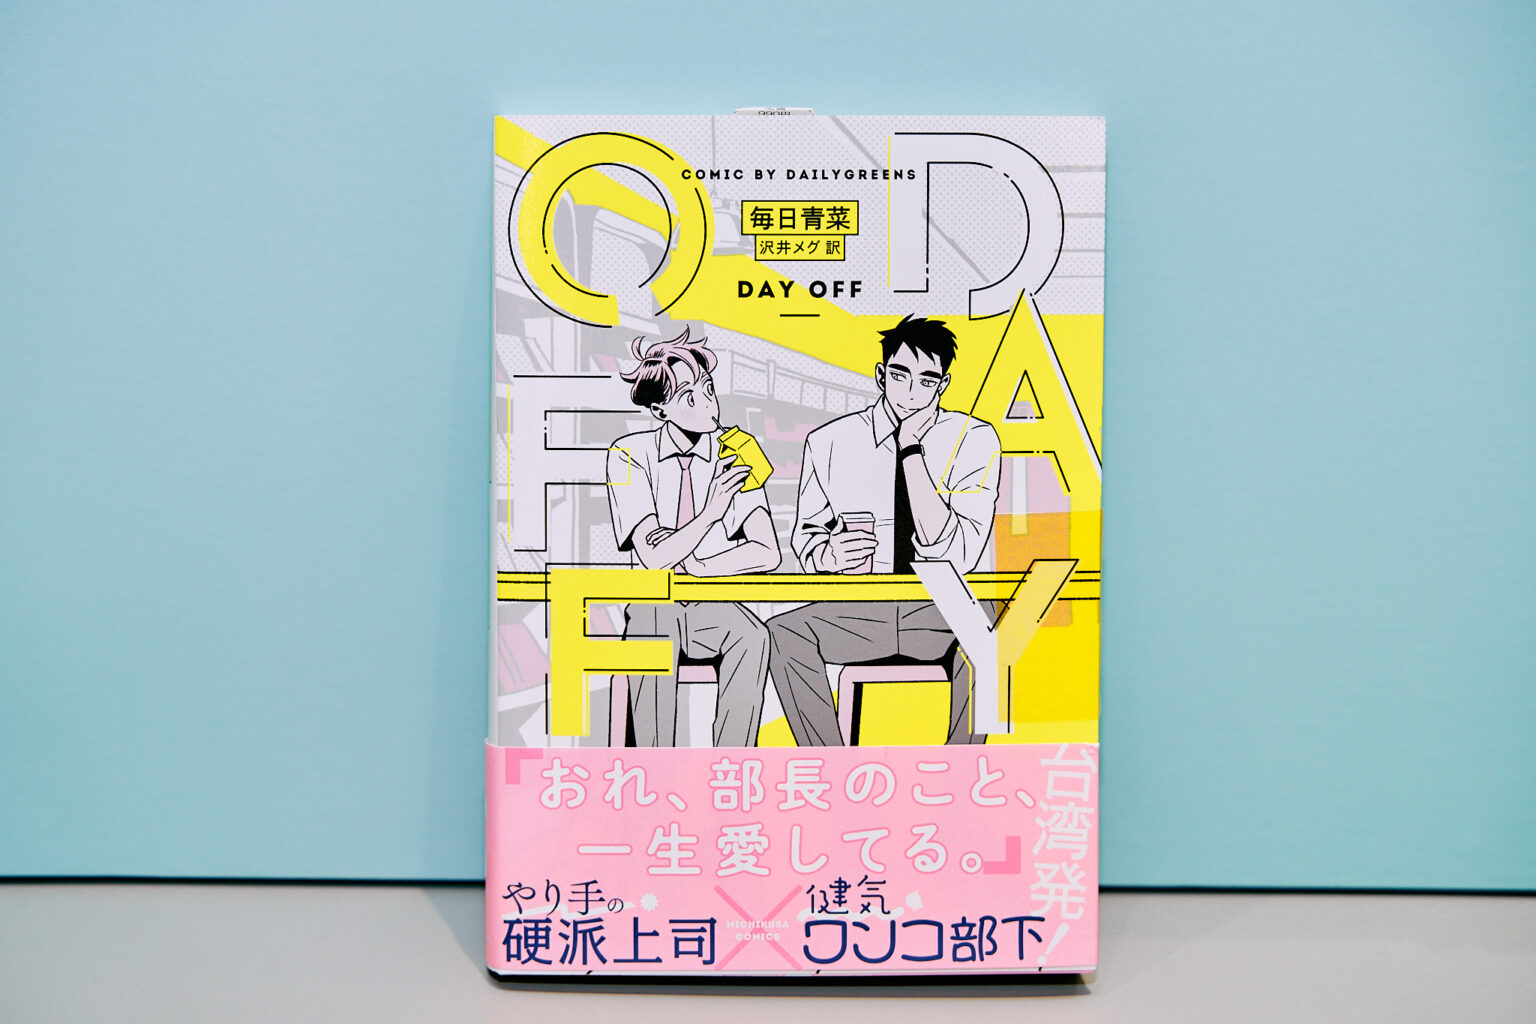 『Day Off』（©每日青菜／留守番工作室）胸が締め付けられるほどかわいい、とネット連載で大人気の台湾漫画家・毎日青菜さん初の癒やし系BL作品。超男らしい部長とかわいい部下の甘い日常を描く。日本語翻訳版も日本の電子漫画アプリや書店で発売されており、購入可能。